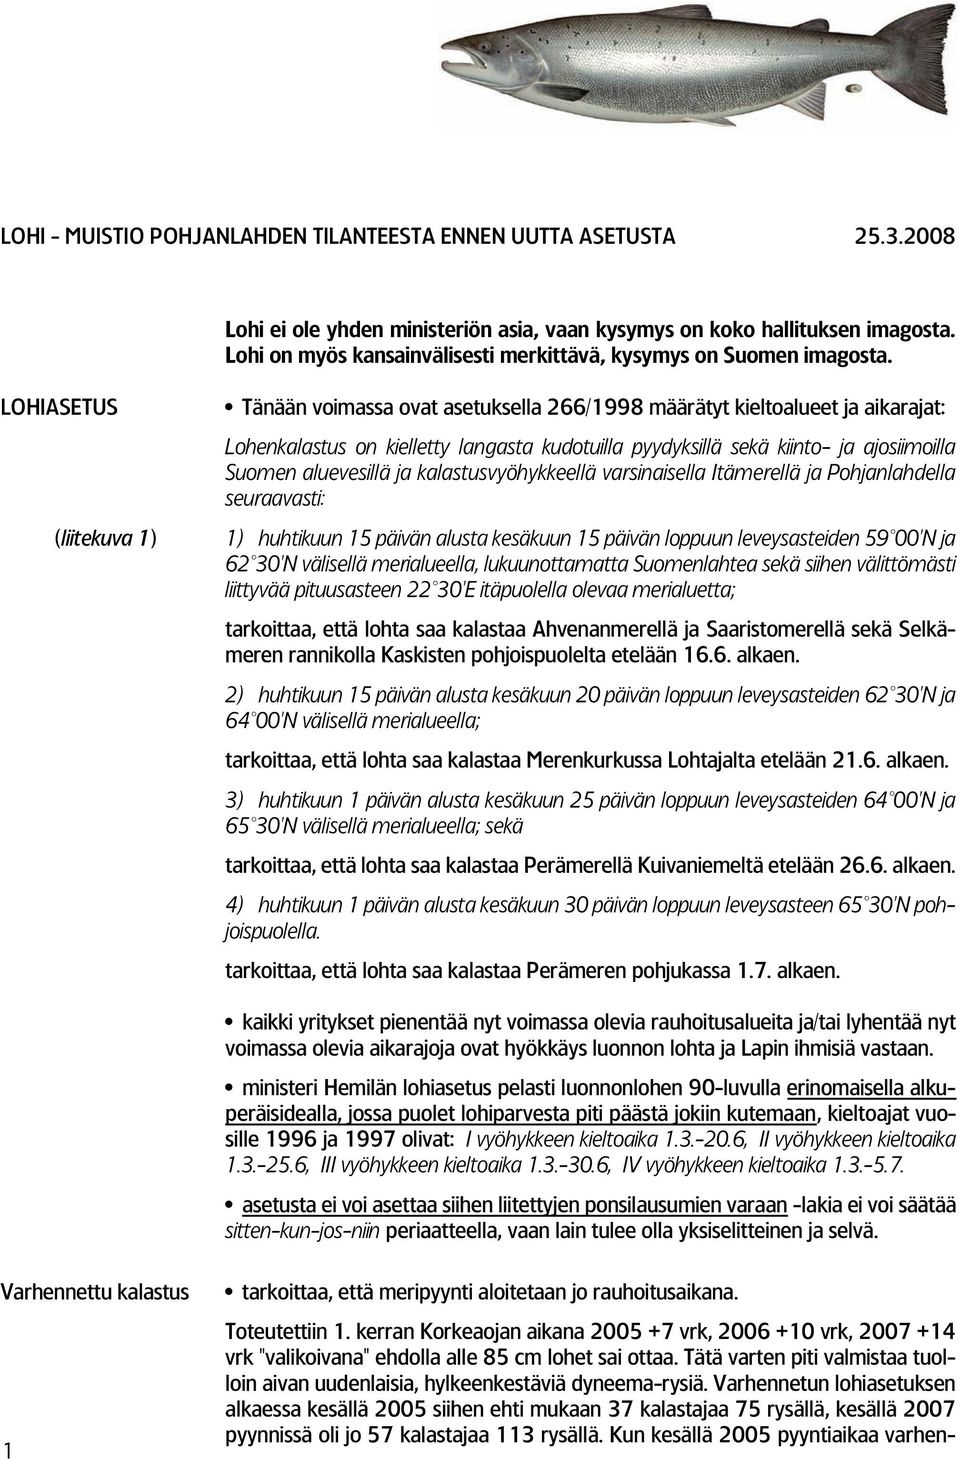 LOHIASETUS (liitekuva 1) Tänään voimassa ovat asetuksella 266/1998 määrätyt kieltoalueet ja aikarajat: Lohenkalastus on kielletty langasta kudotuilla pyydyksillä sekä kiinto ja ajosiimoilla Suomen